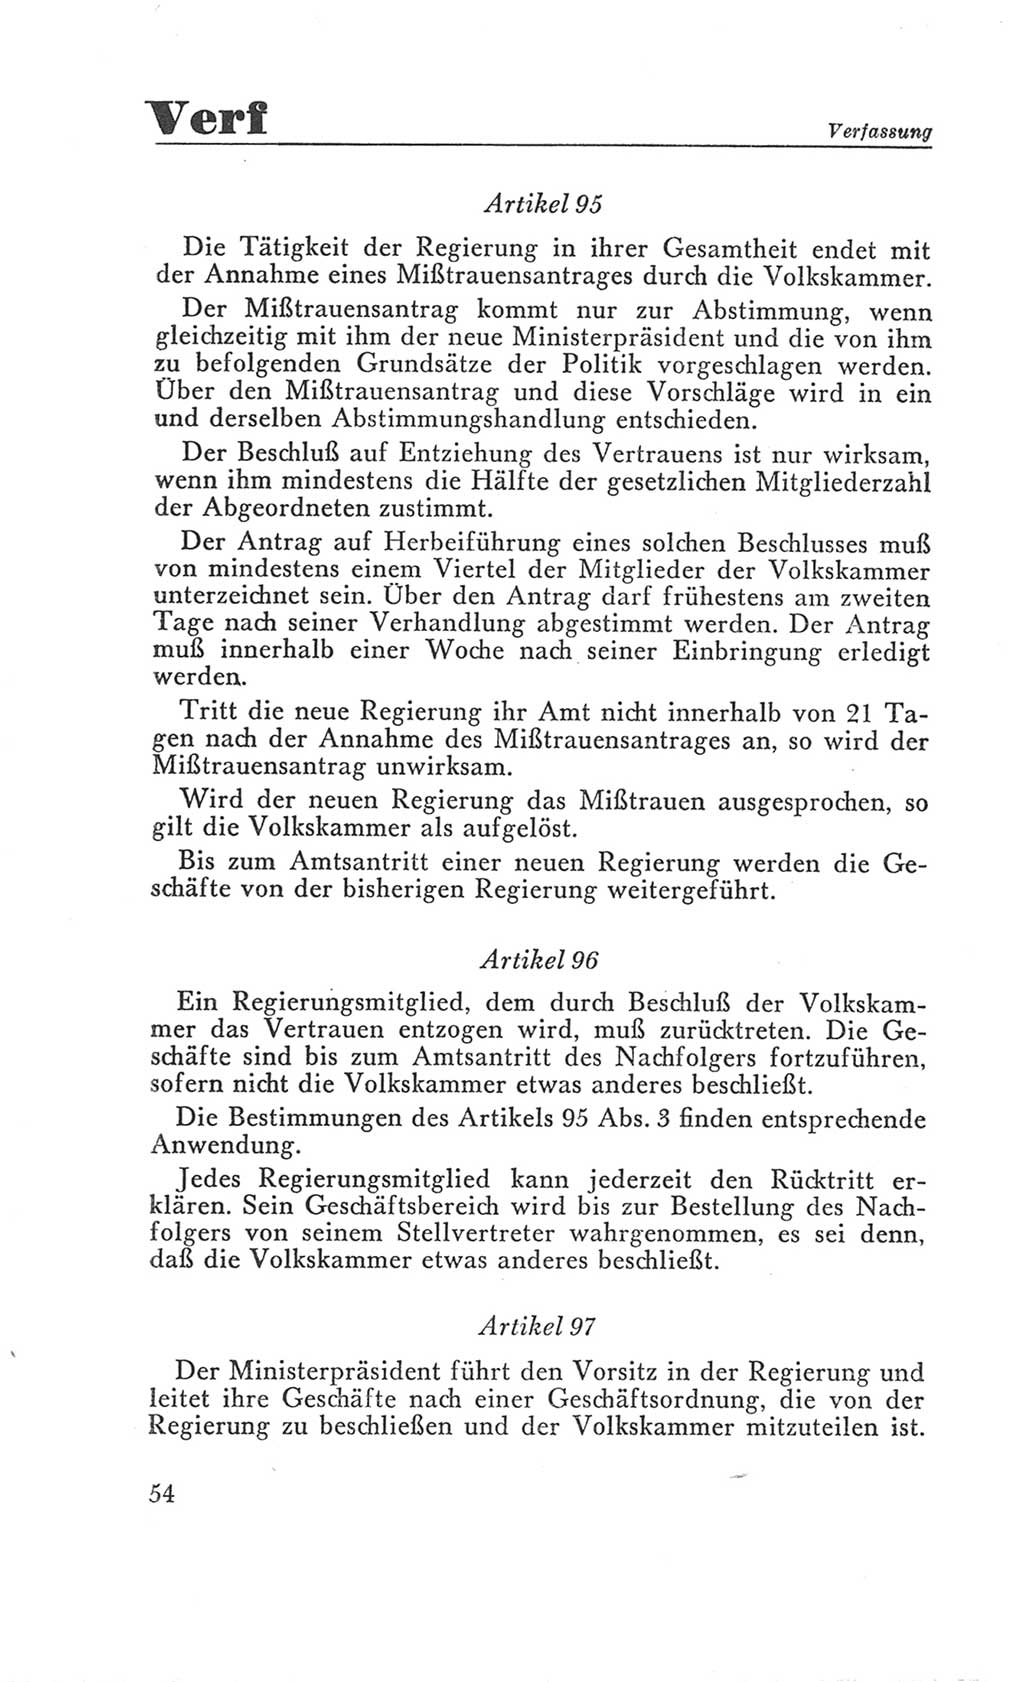 Handbuch der Volkskammer (VK) der Deutschen Demokratischen Republik (DDR), 3. Wahlperiode 1958-1963, Seite 54 (Hdb. VK. DDR 3. WP. 1958-1963, S. 54)